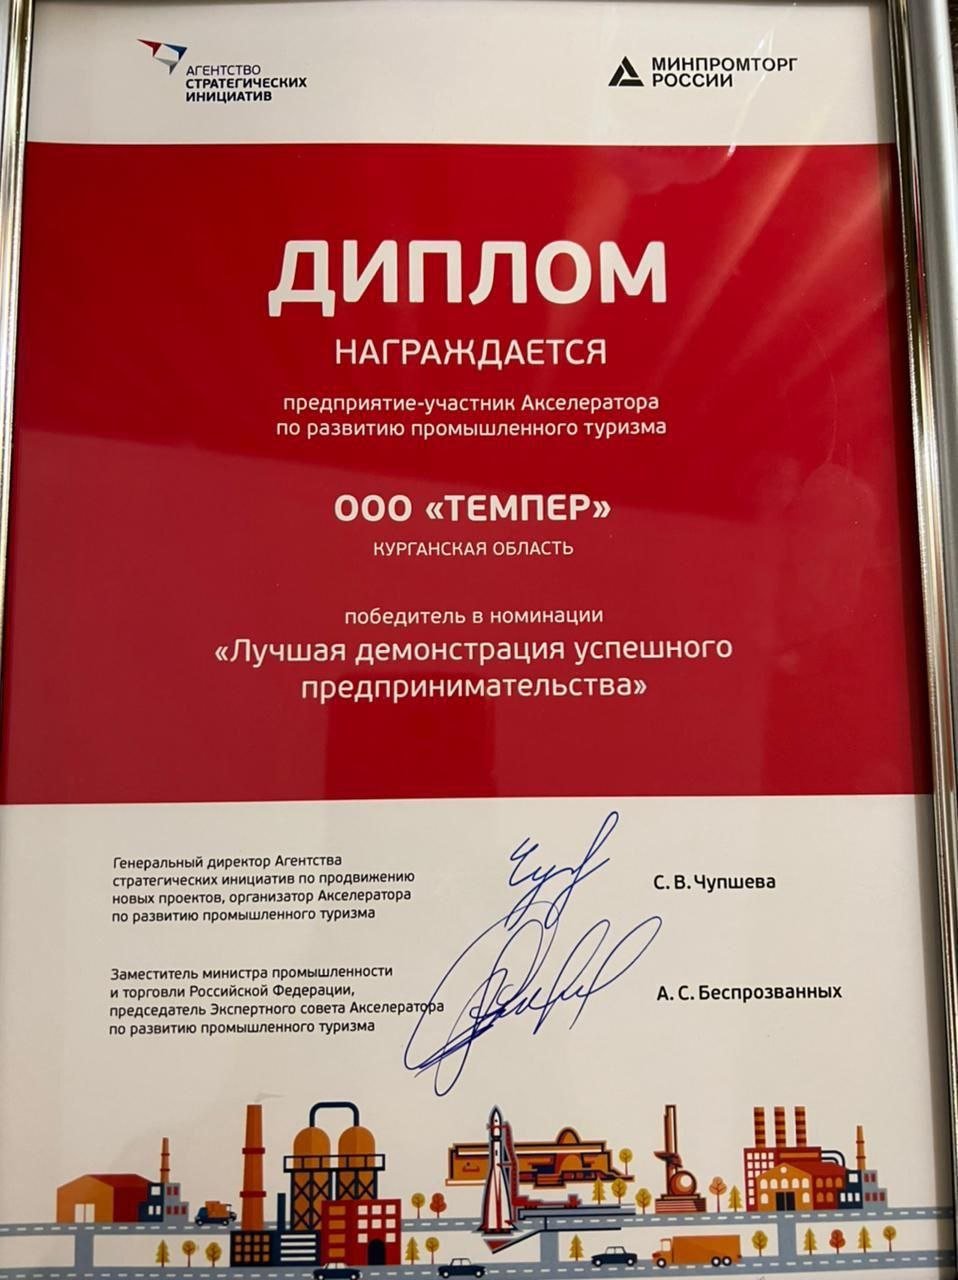 Производитель шаровых кранов «ТЕМПЕР» стал победителем всероссийского конкурса по промышленному туризму